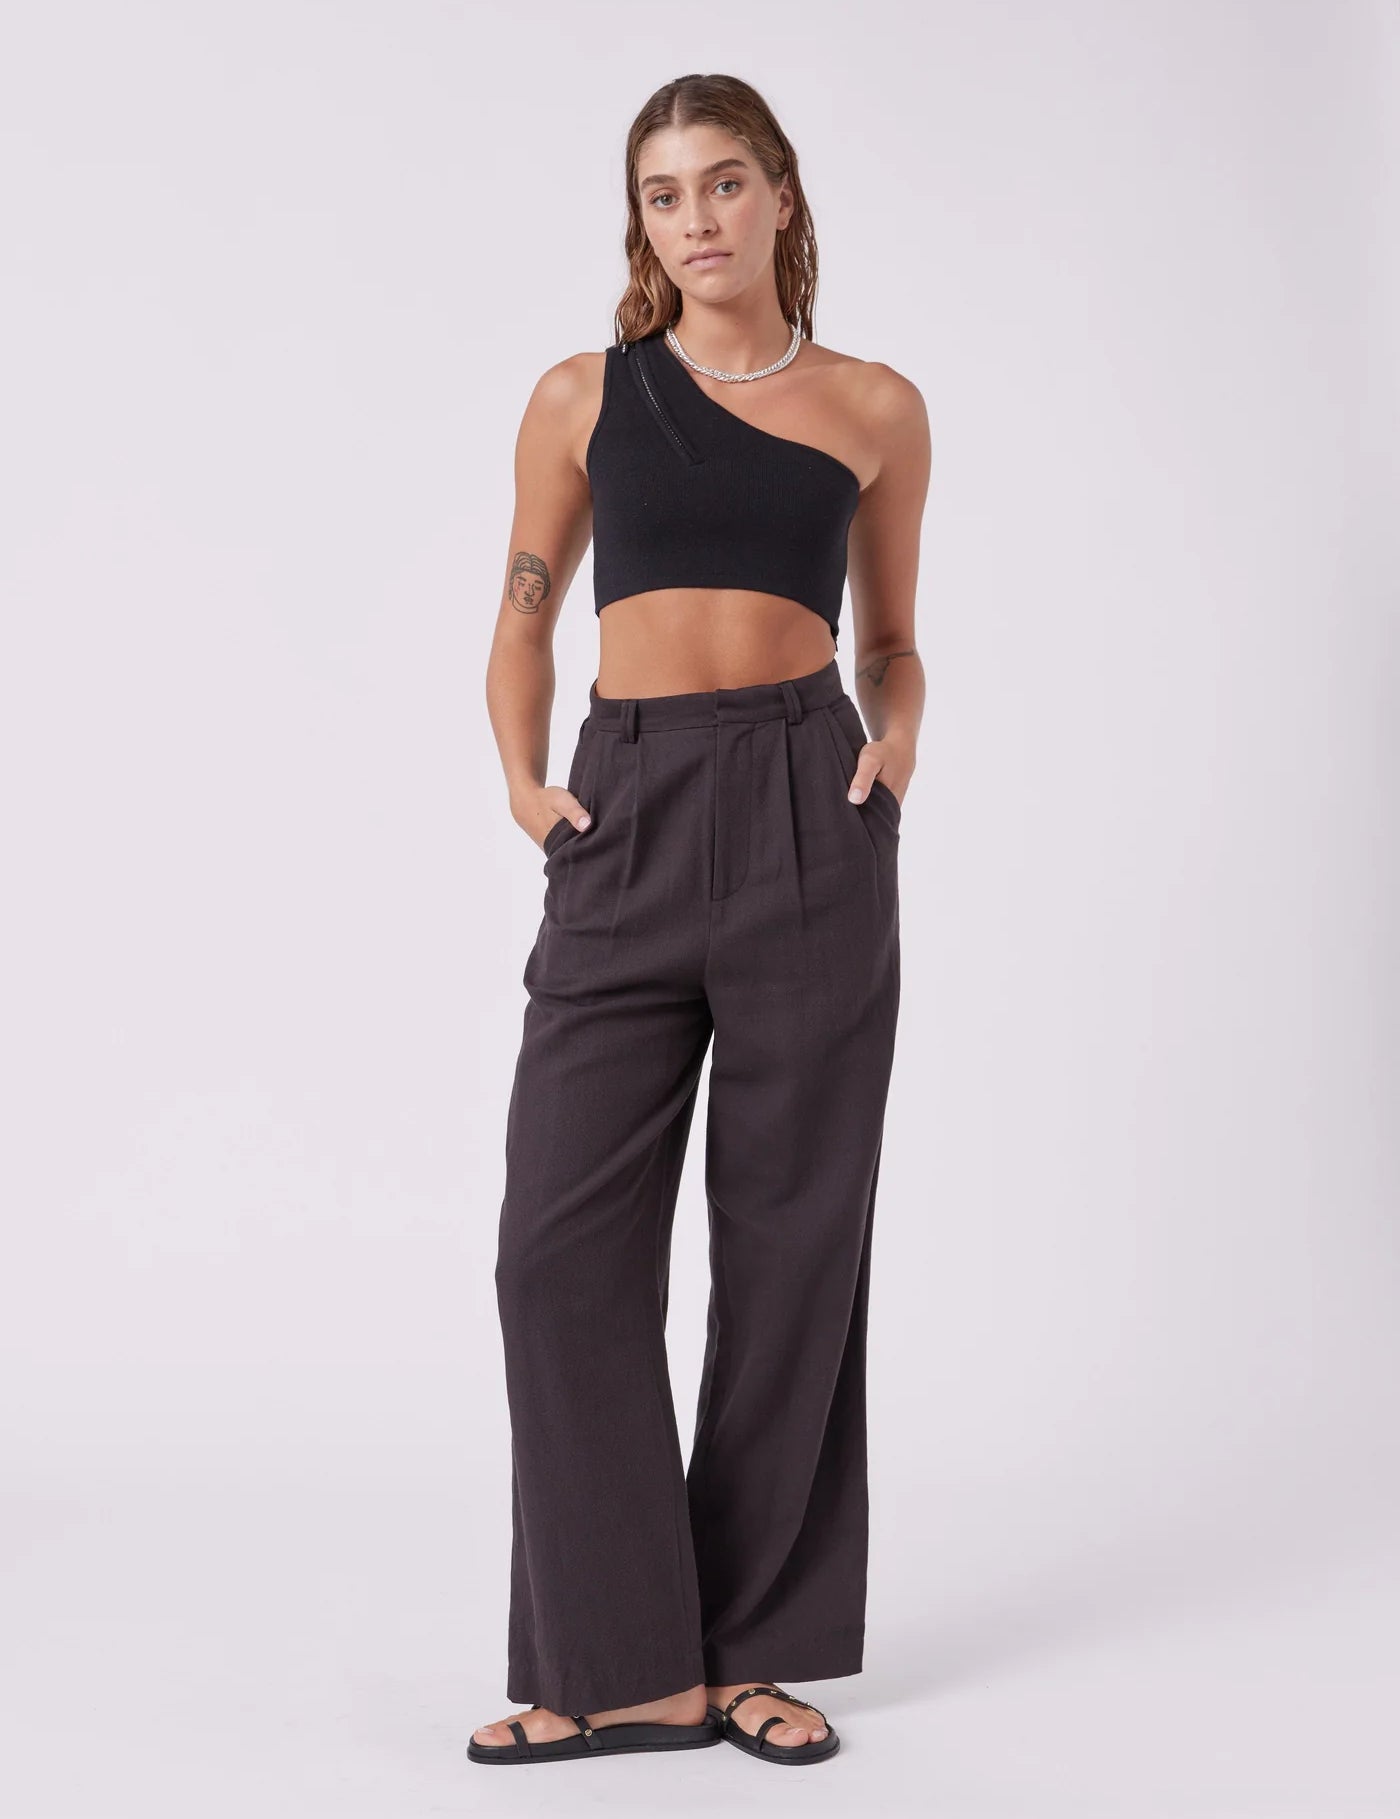 mnk-atelier-bottoms-tailored-pants-natural-black-40521014444309_1400x_a056e4e9-3224-43ed-9cc6-5c04116de52a.webp